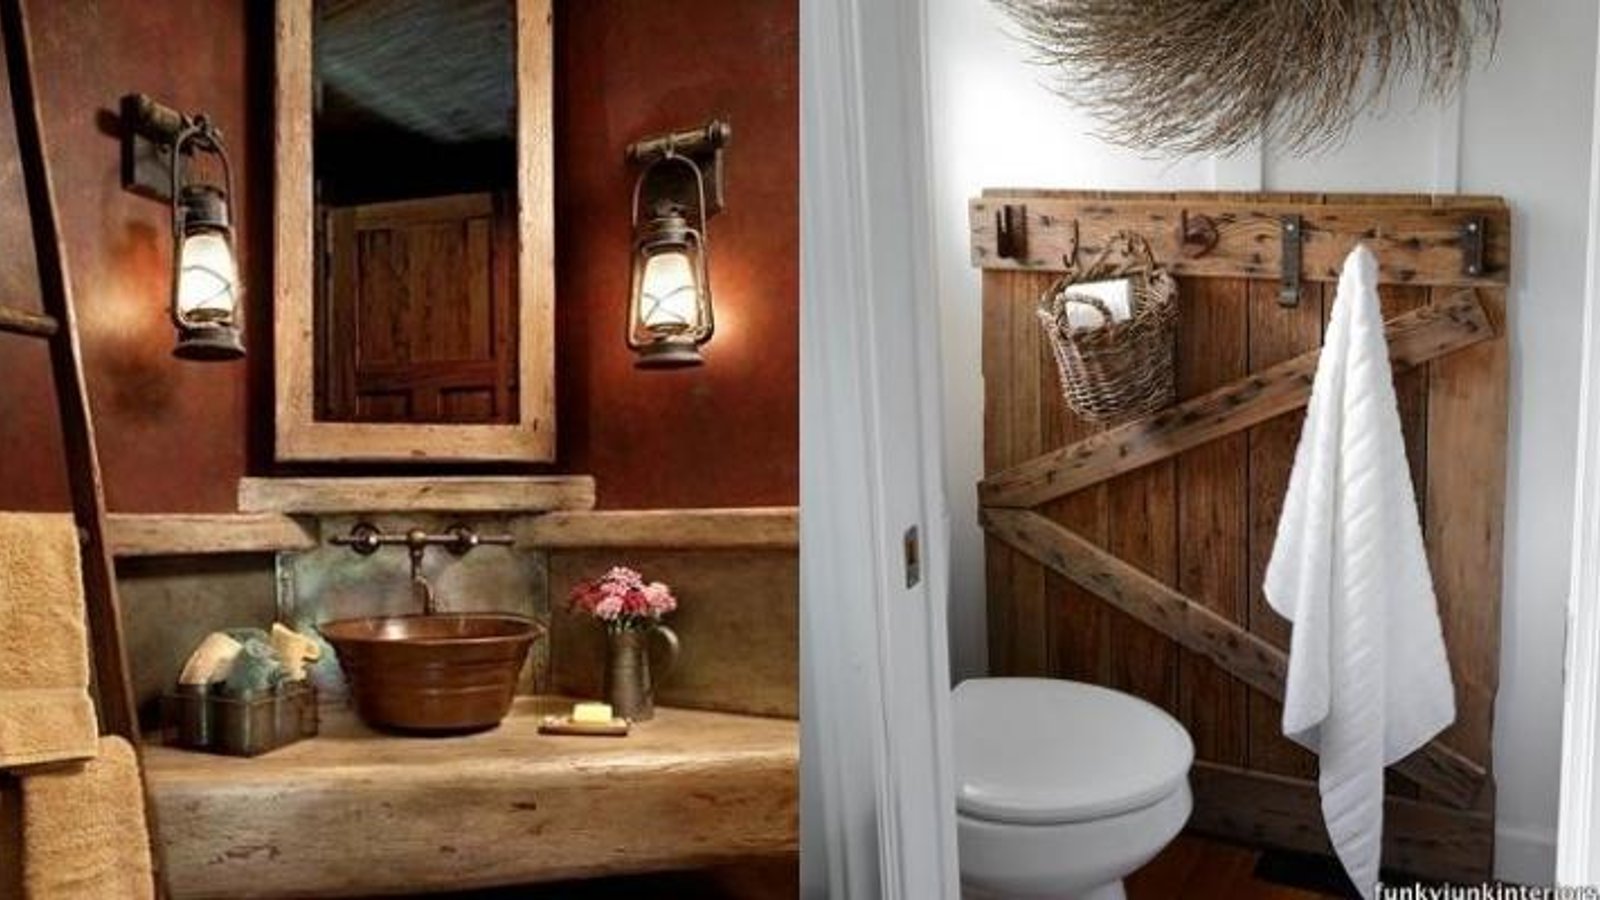 Plus de 35 photos pour vous inspirer une salle de bain rustique!